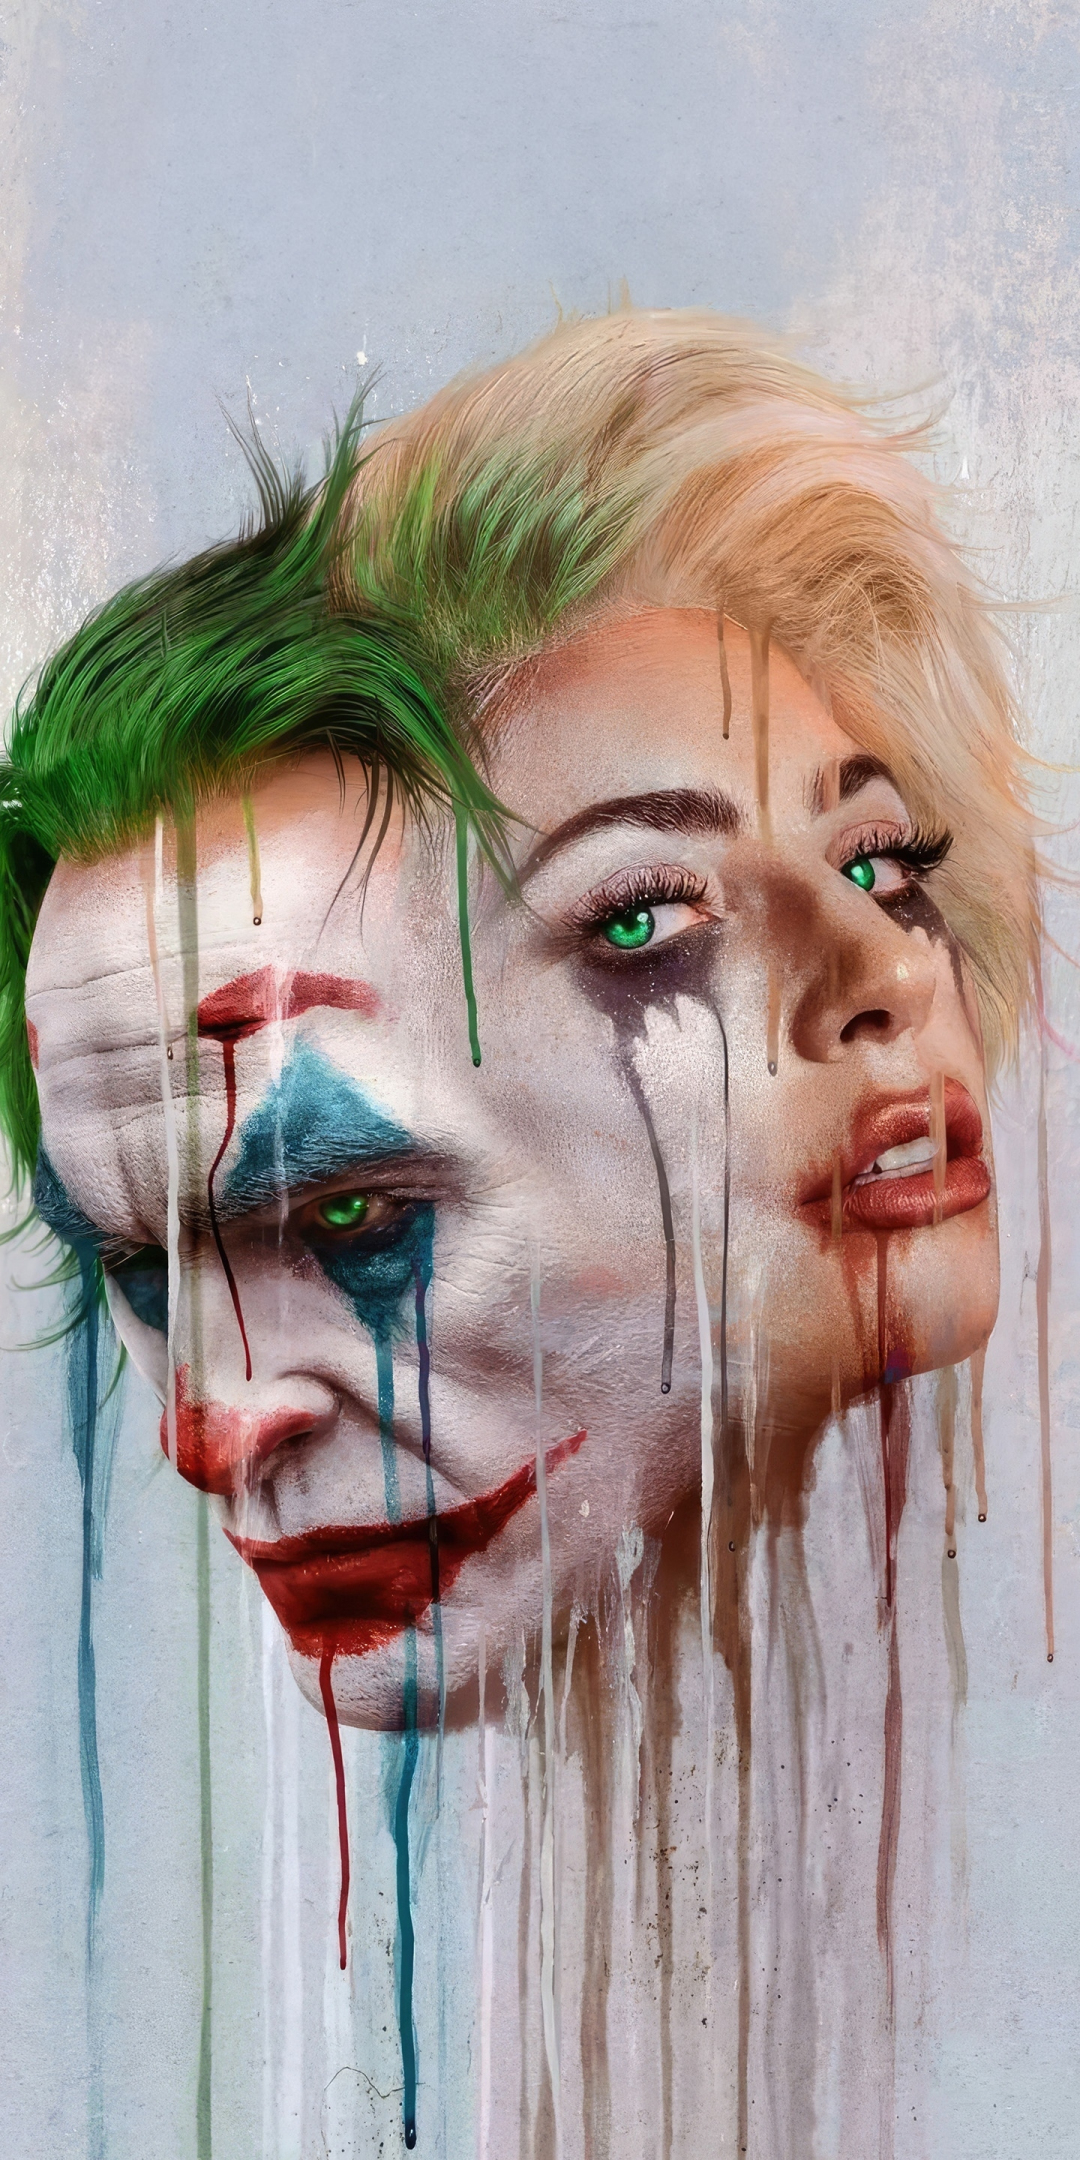 Joker's folie a deux, artwork, 1080x2160 wallpaper